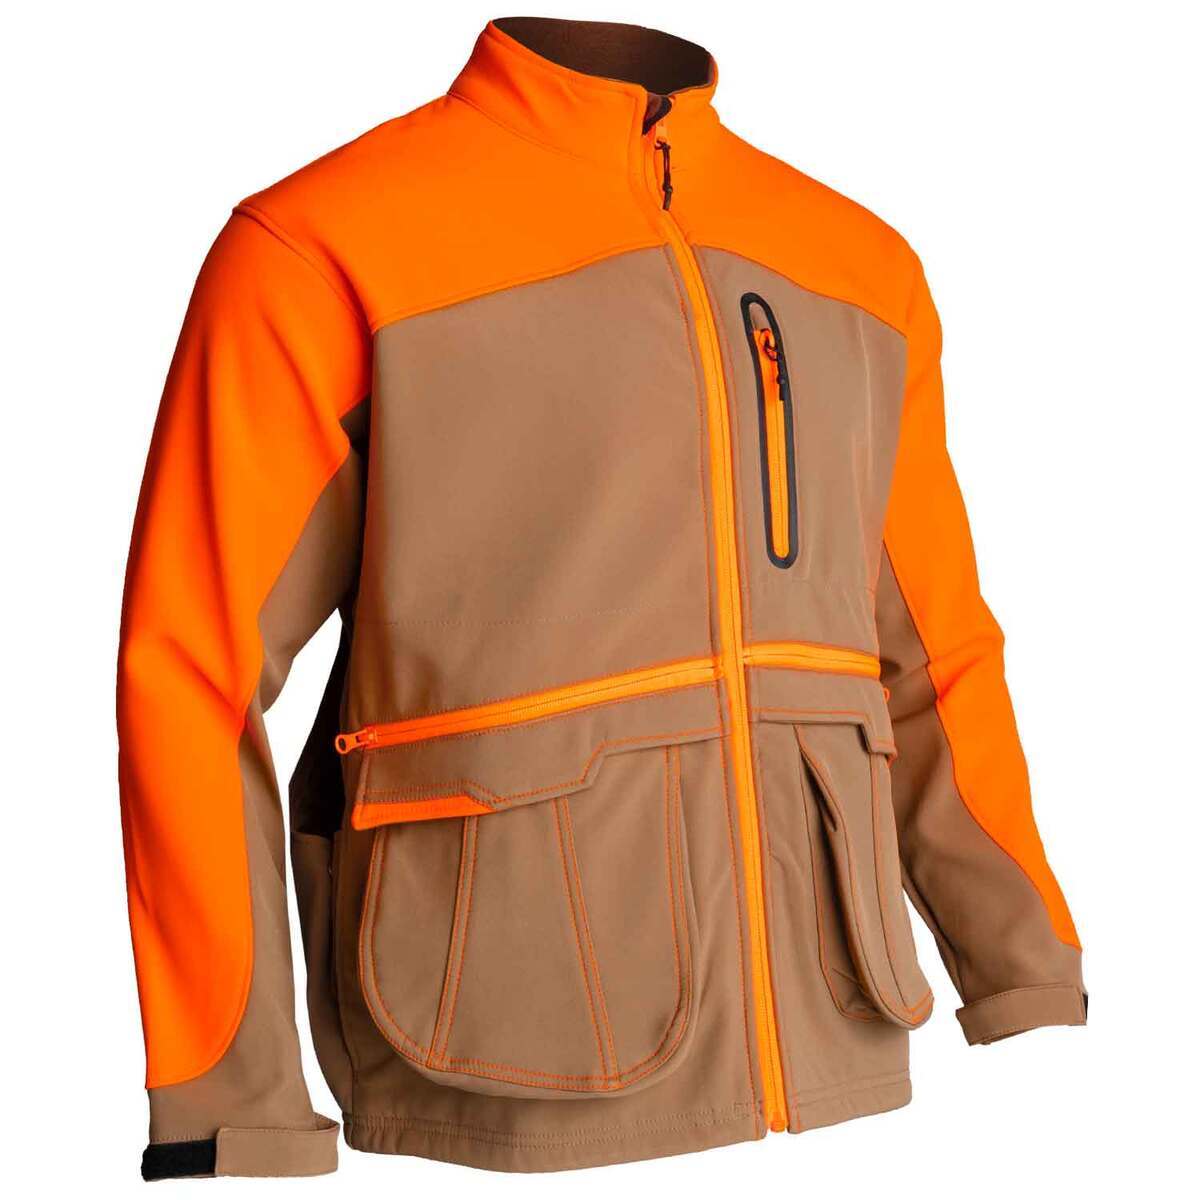 Gamehide Men's Fenceline Upland Hunting Jacket | Sportsman's Warehouse